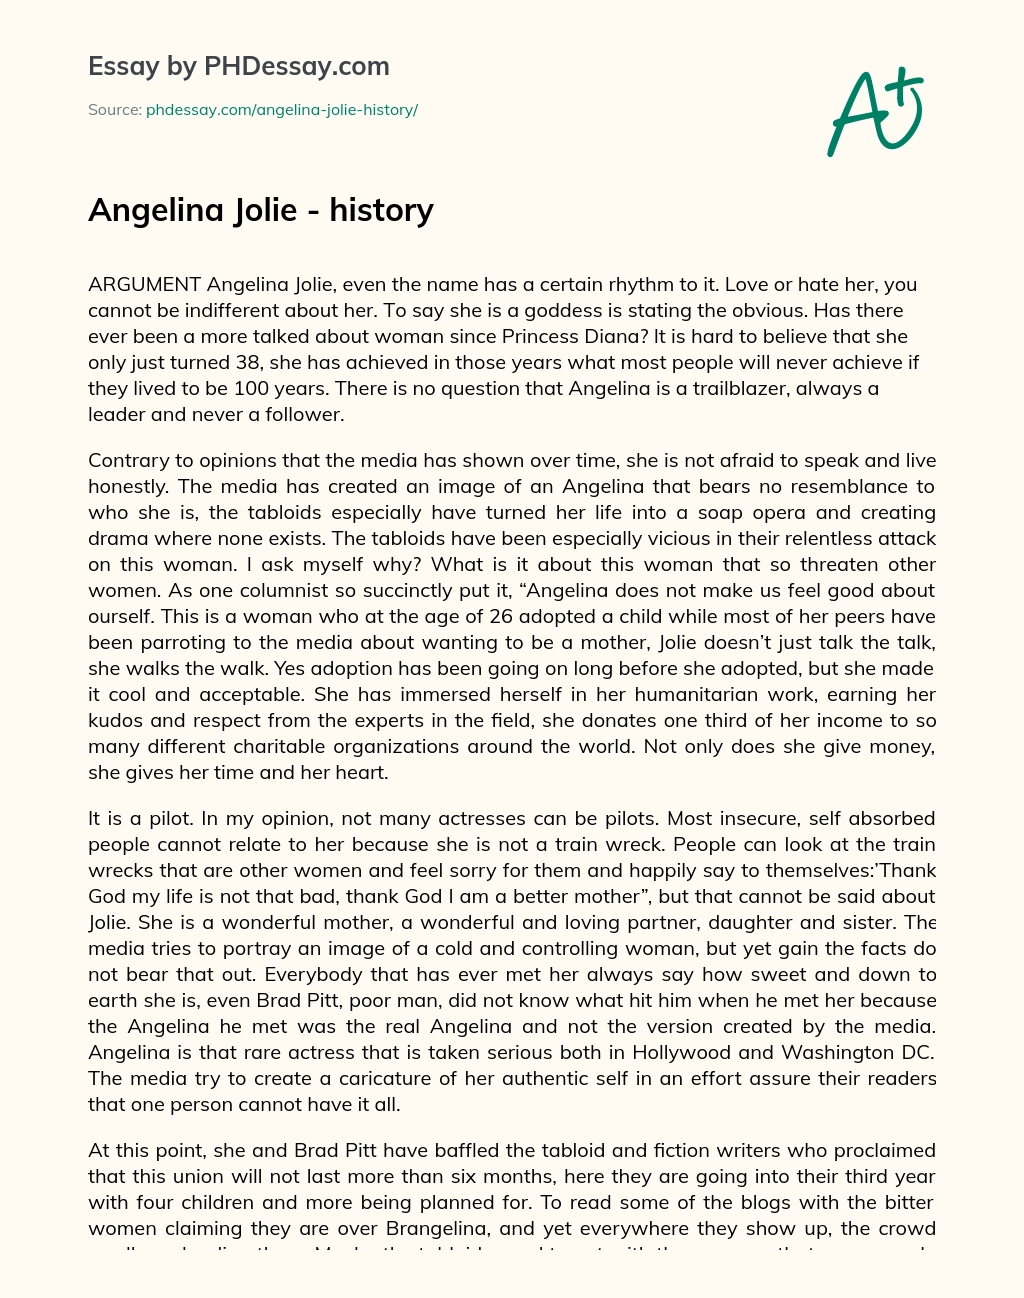 Angelina Jolie – history essay